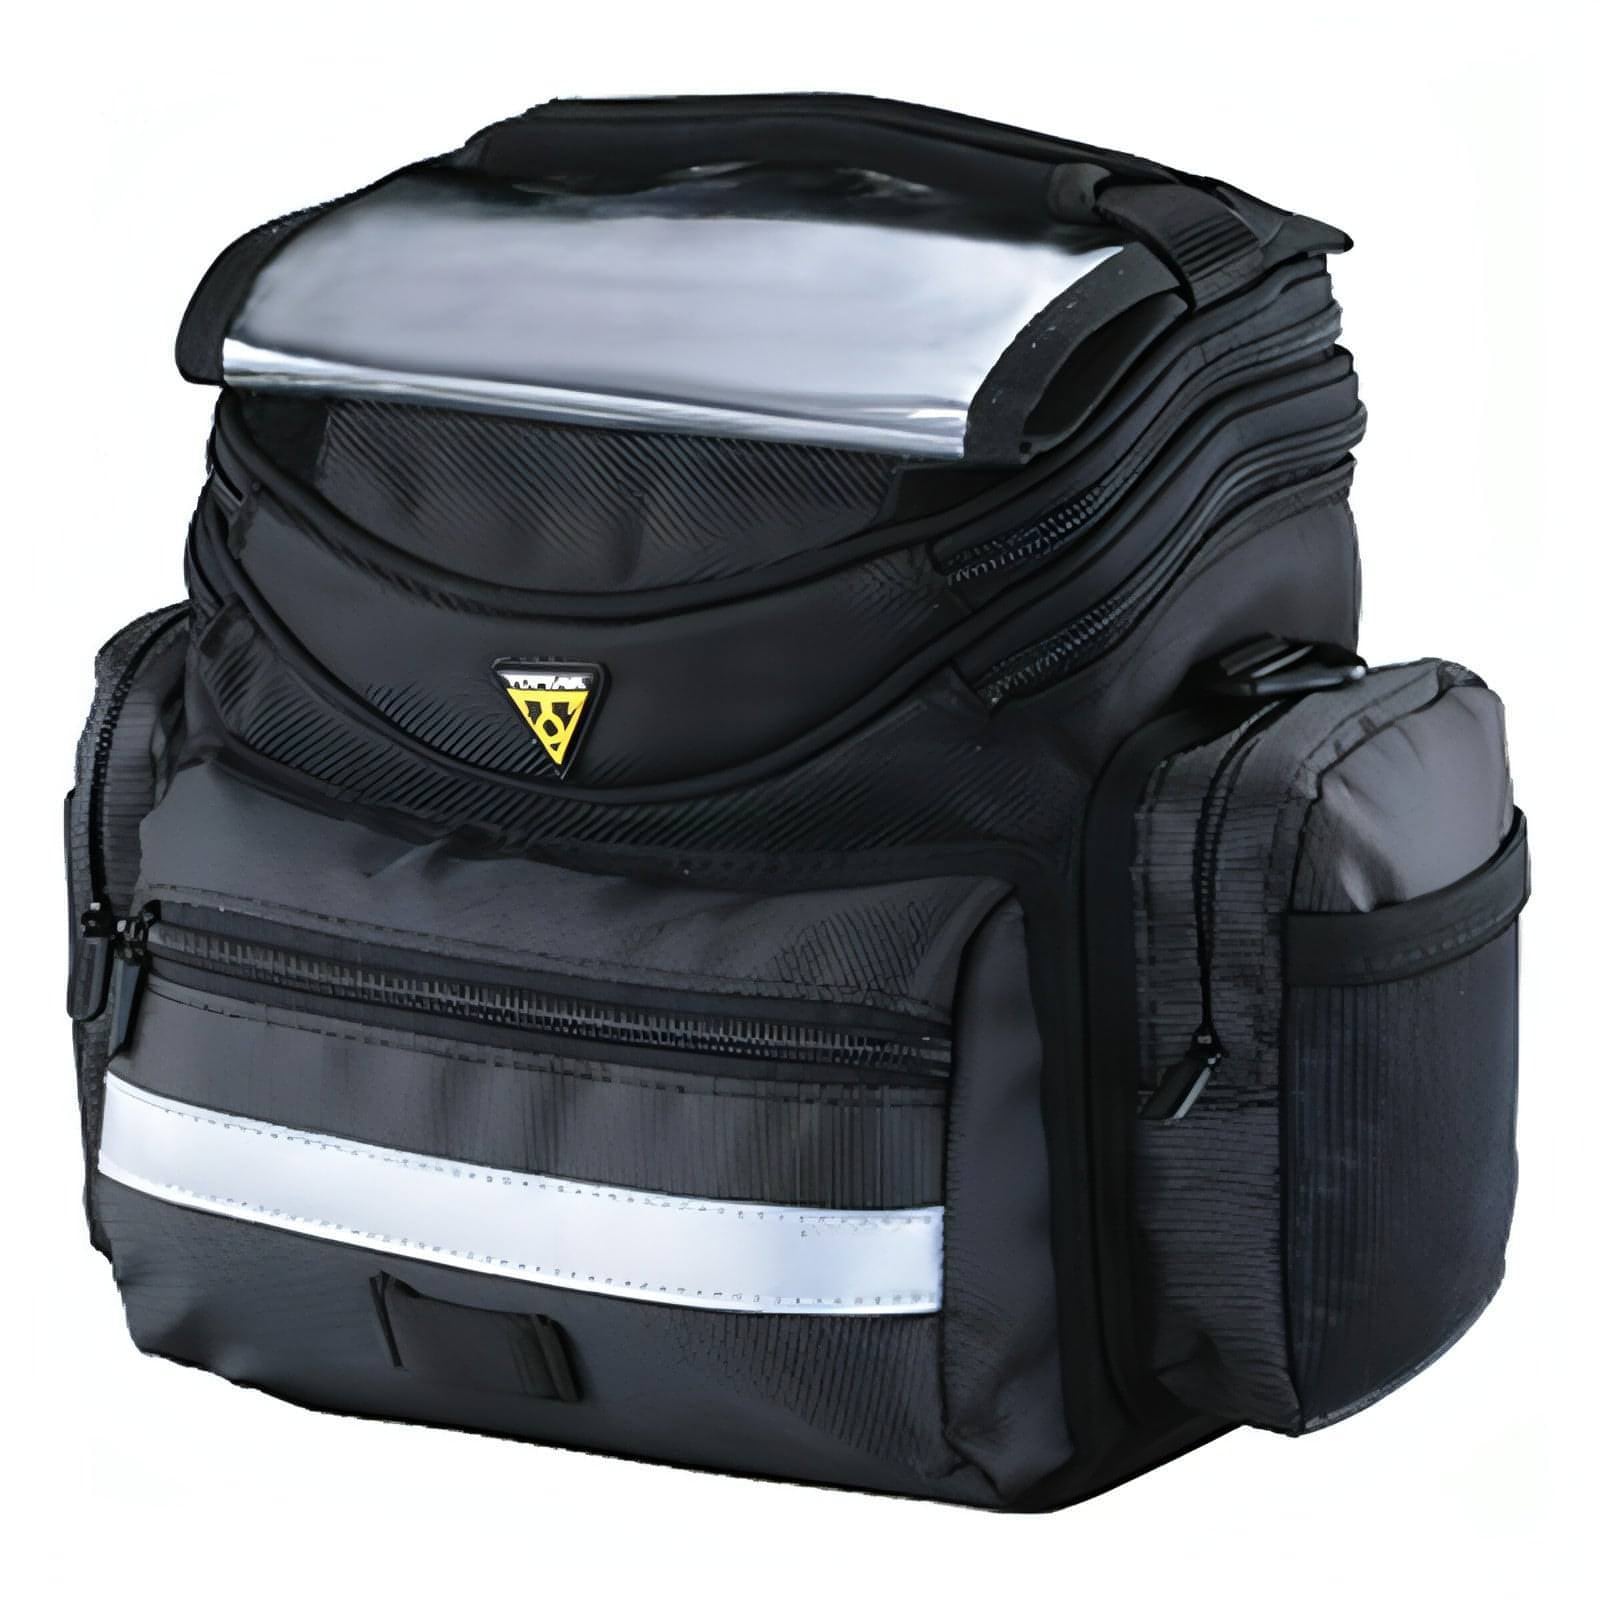 Topeak TourGuide Handlebar Bag - Black 883466020191 - Start Fitness